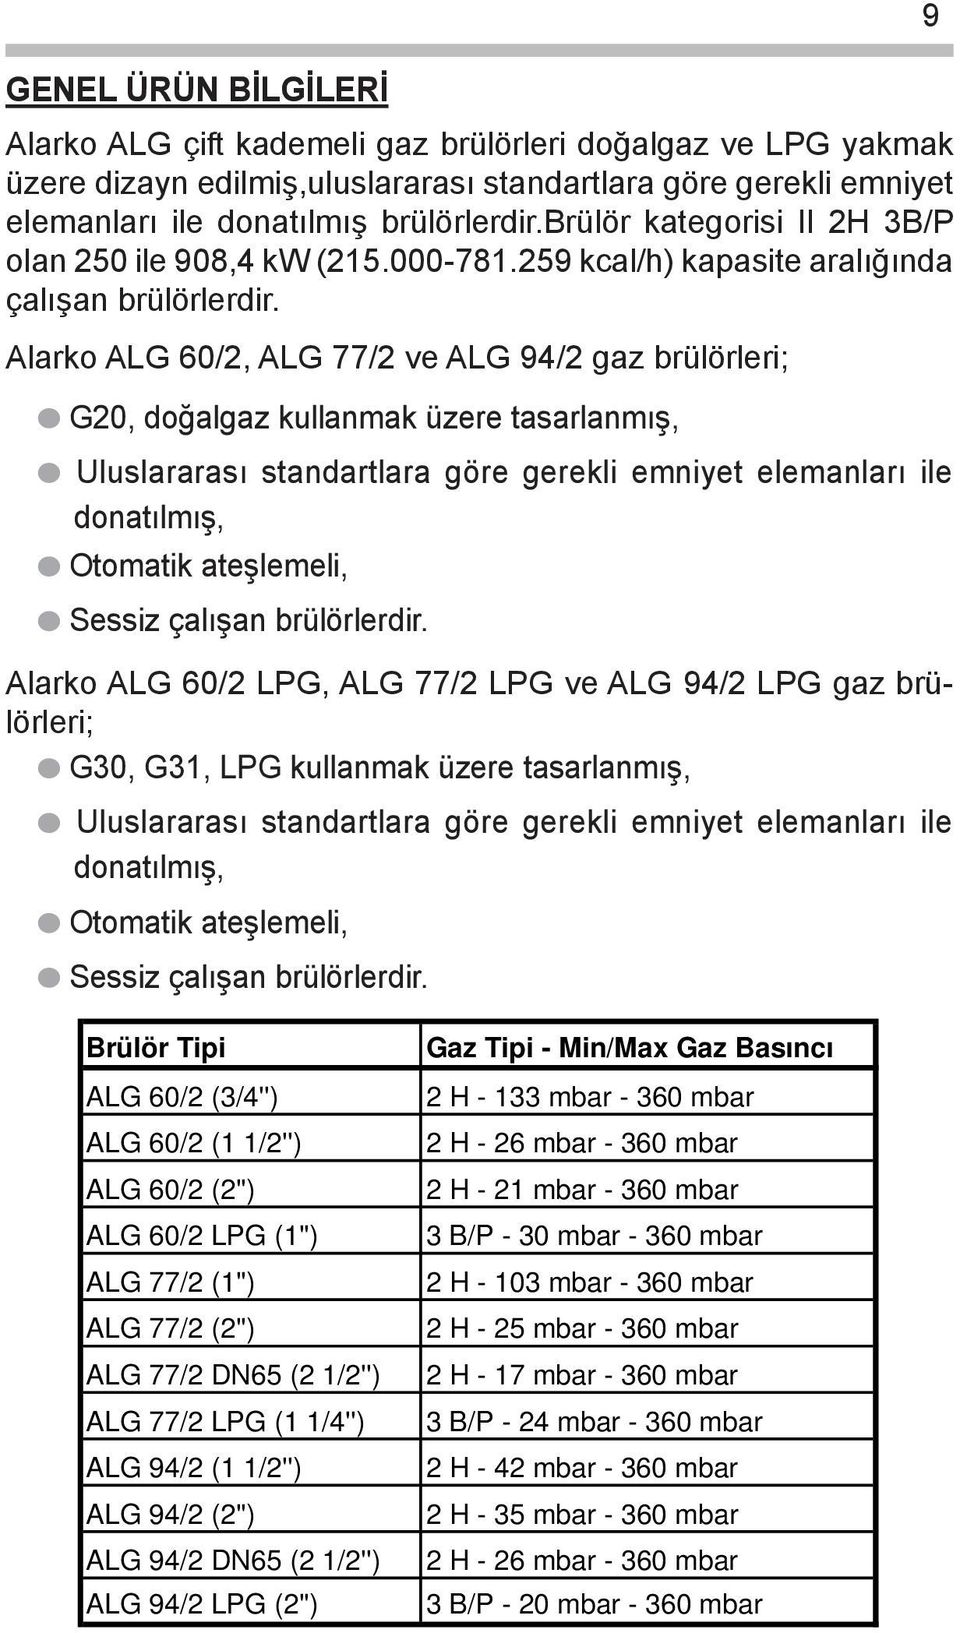 Alarko ALG 60/2, ALG 77/2 ve ALG 94/2 gaz brülörleri; G20, doğalgaz kullanmak üzere tasarlanmış, Uluslararası standartlara göre gerekli emniyet elemanları ile donatılmış, Otomatik